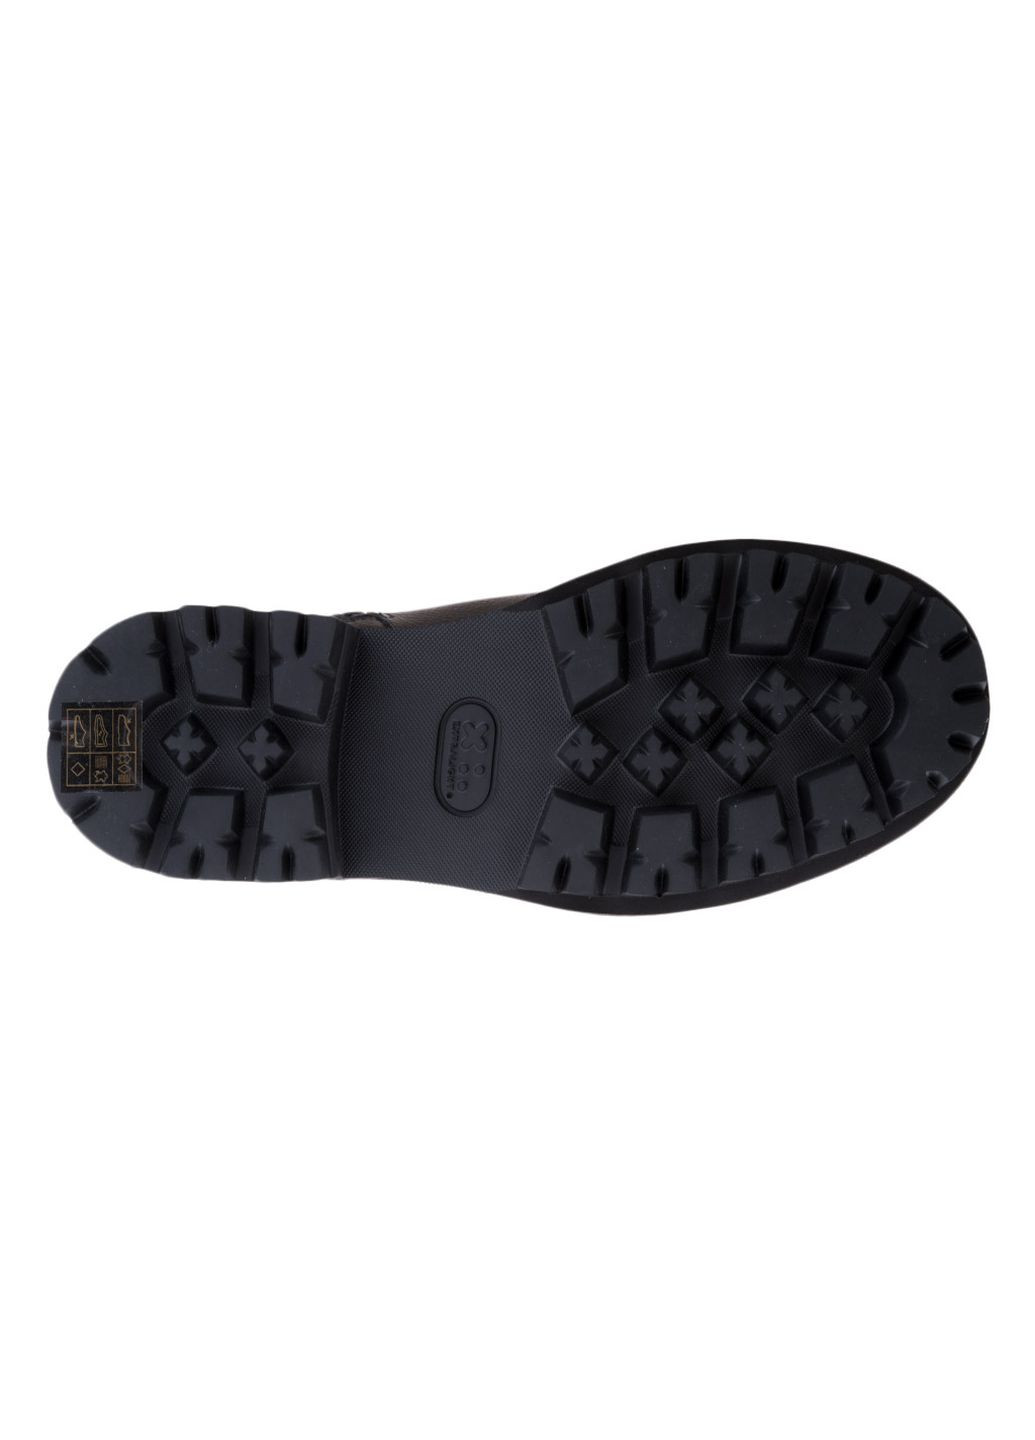 Черные осенние ботинки Emporio Armani